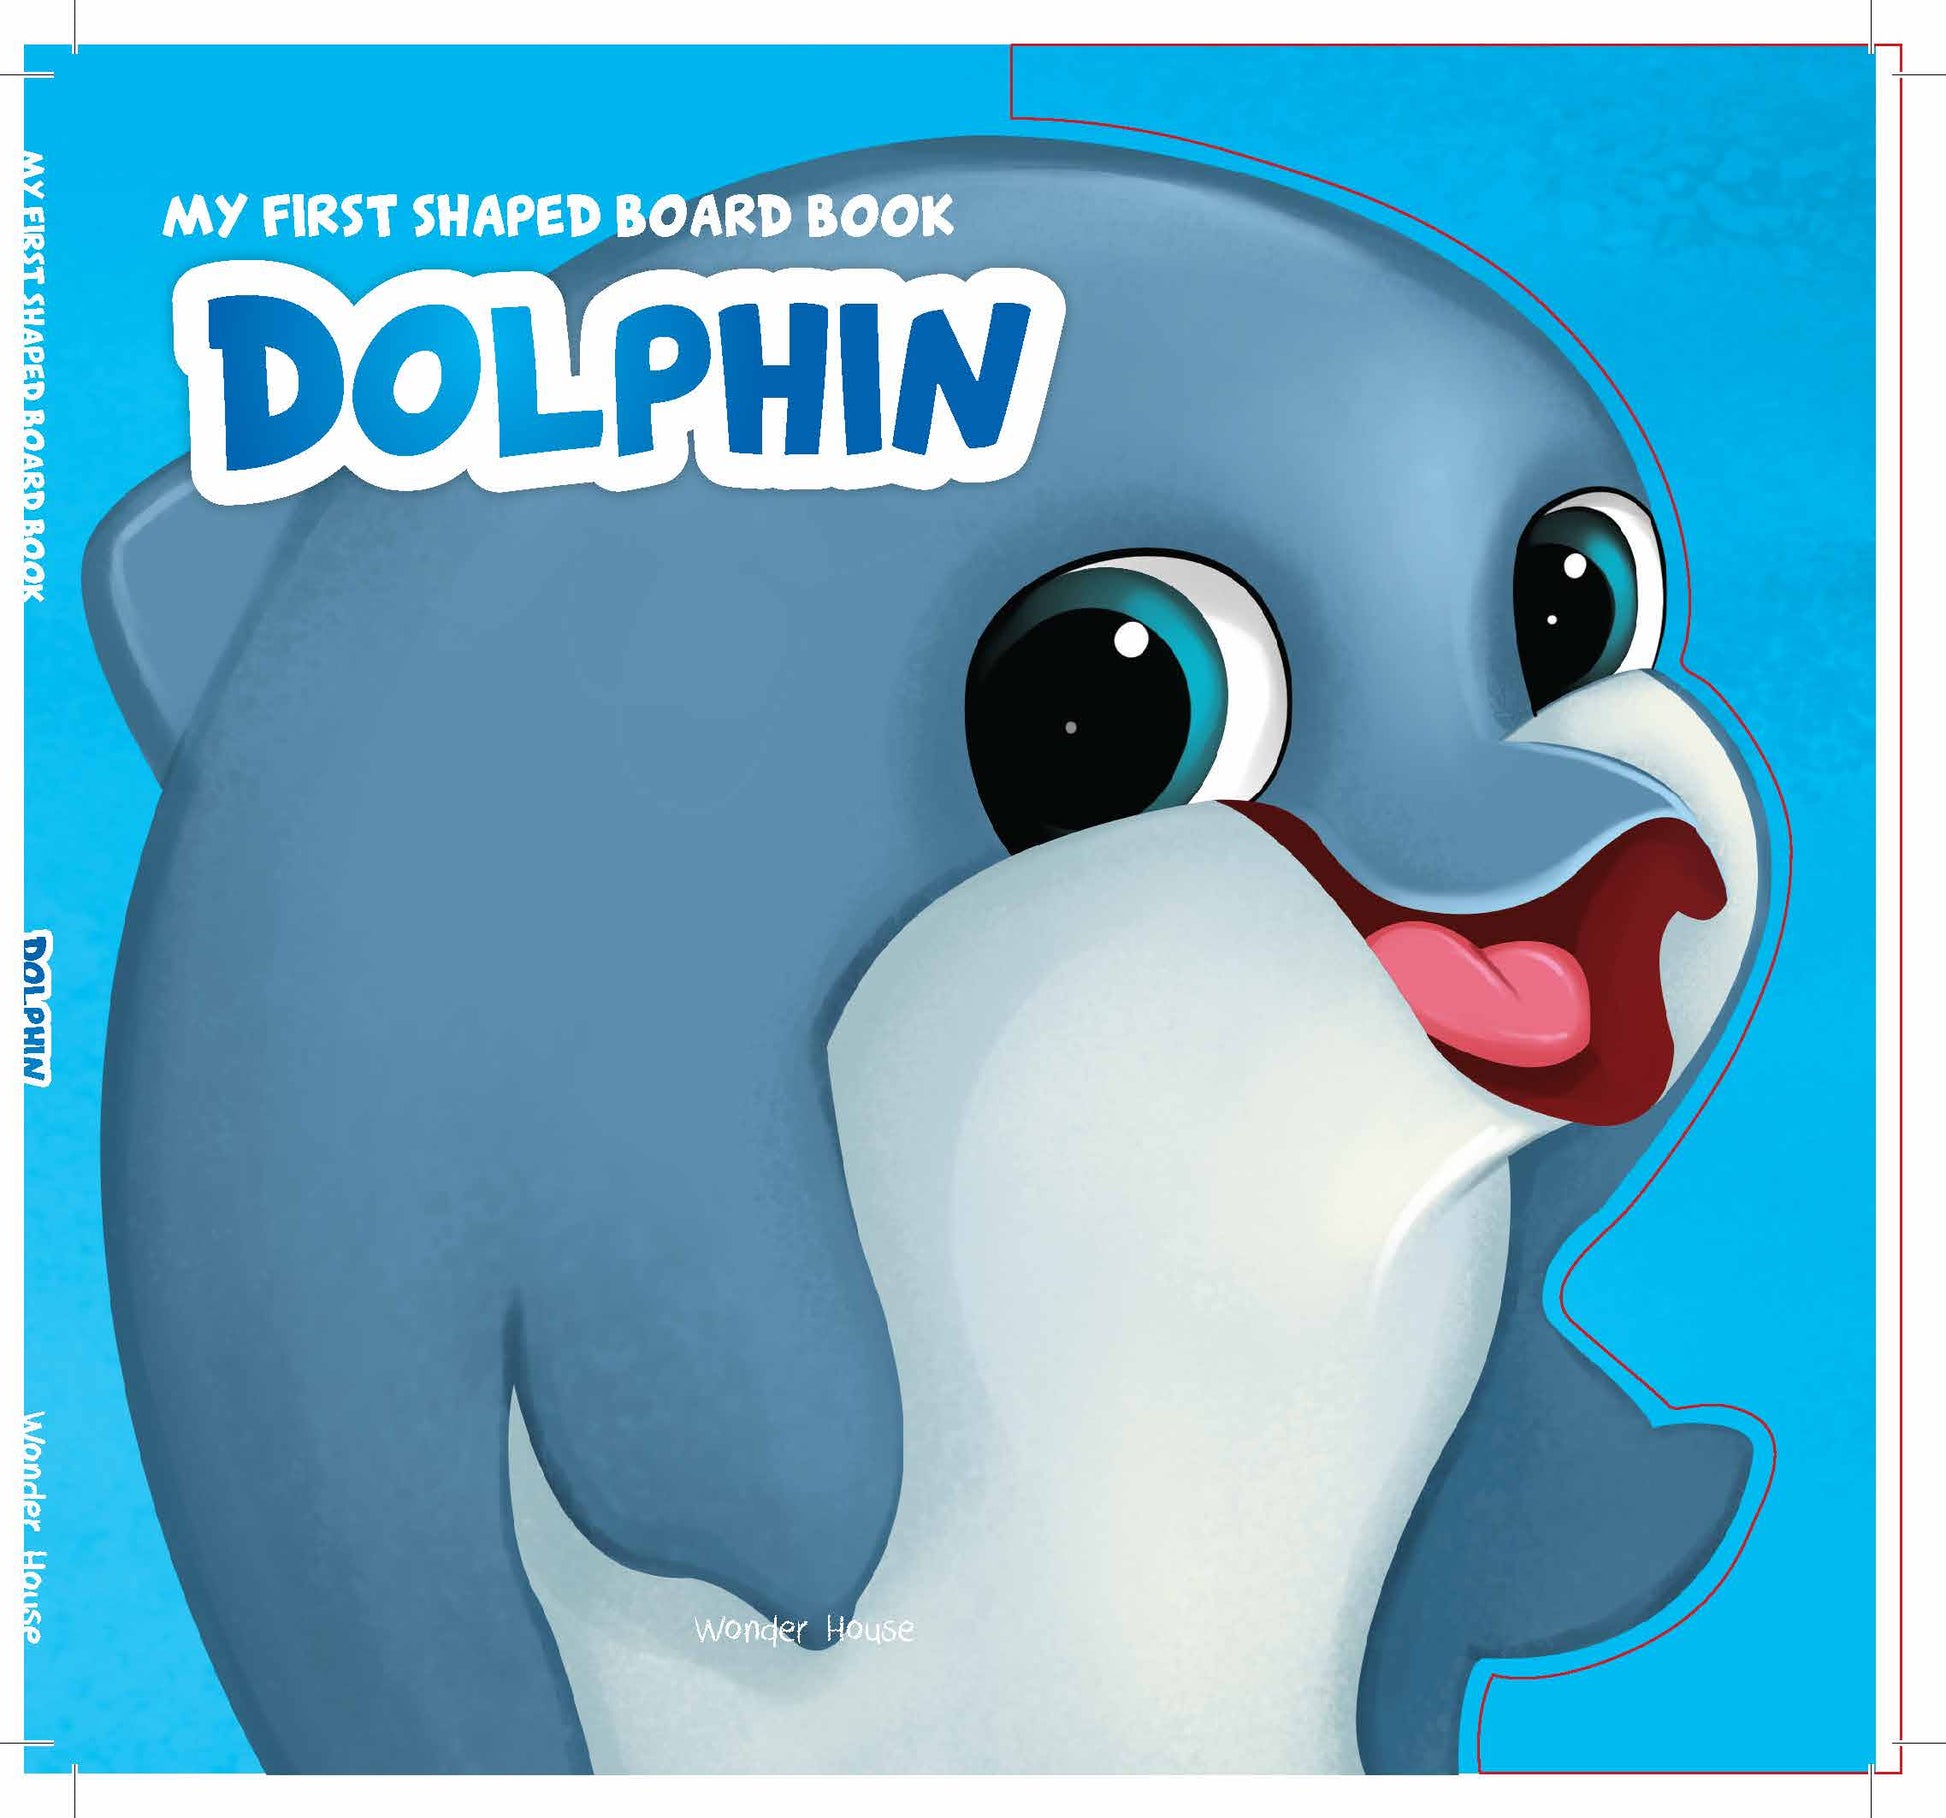 MyFirstShapedBoardbook- Dolphin, Die-Cut Animals, Picture Book for Children